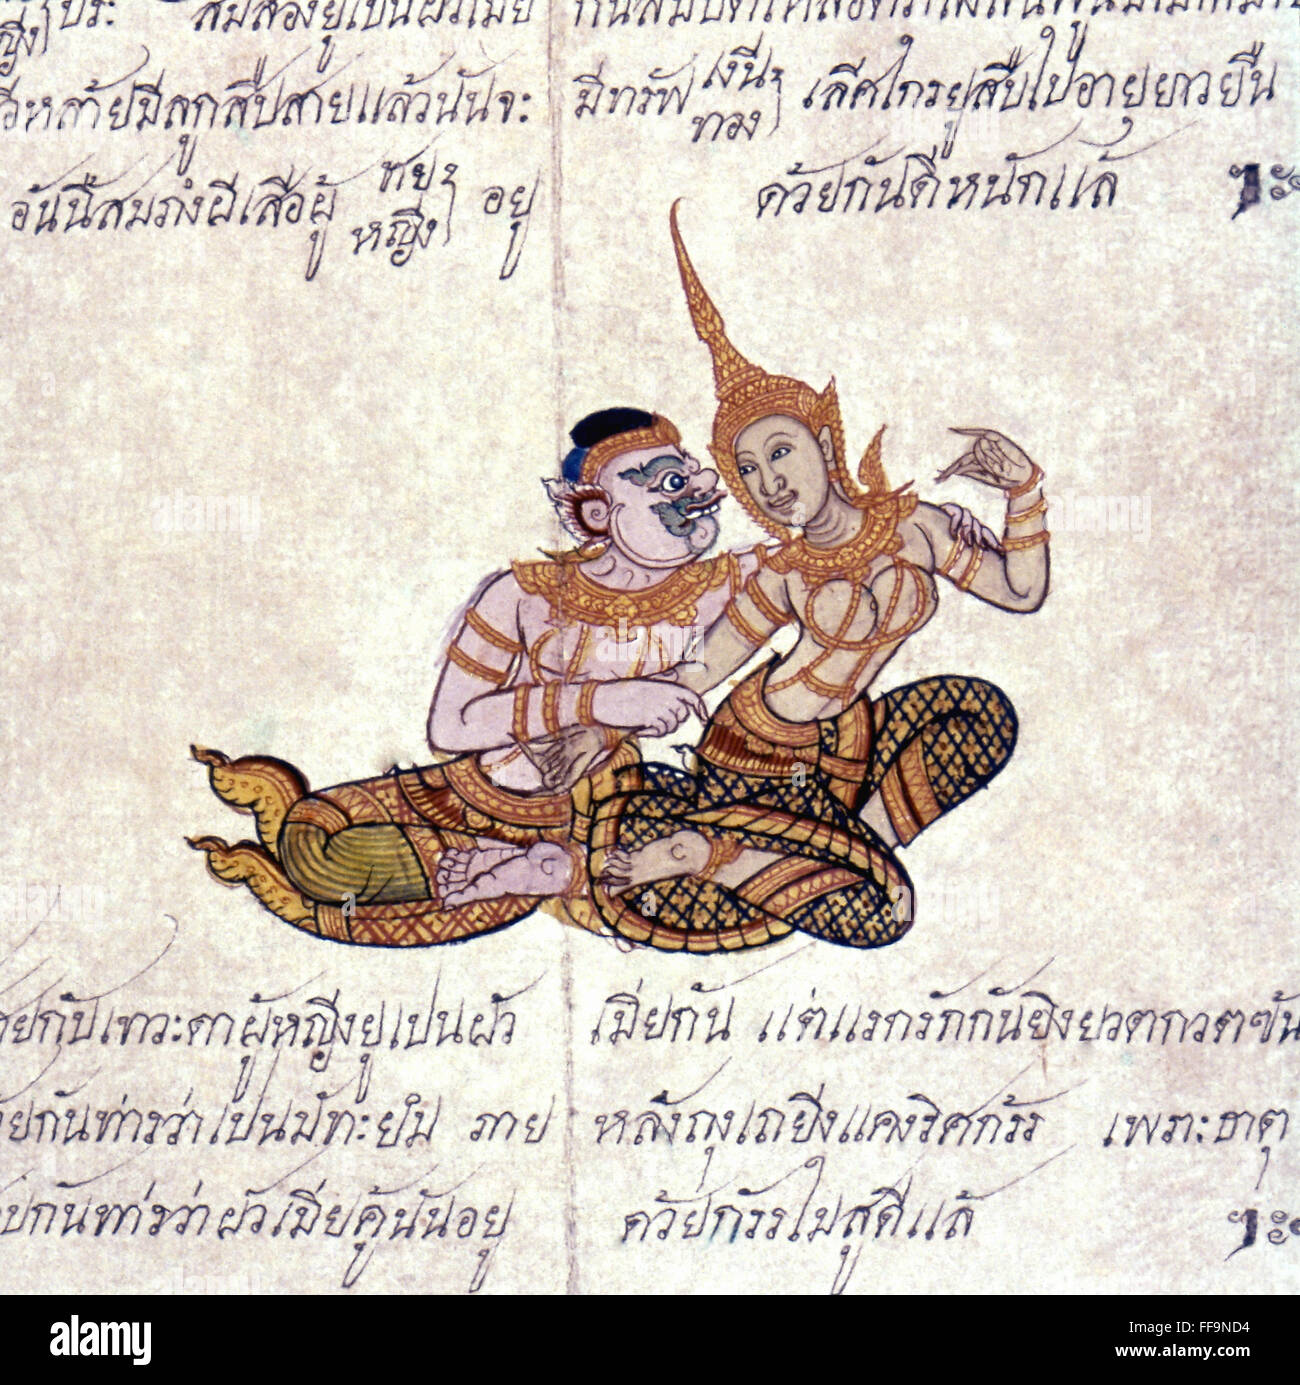 THAI ILLUSTRATION. /nMarital Schicksal bei unterliegen im Gegensatz zu astrologischen Zeichen. Thai Falten-Buchillustration, 19. Jahrhundert. Stockfoto